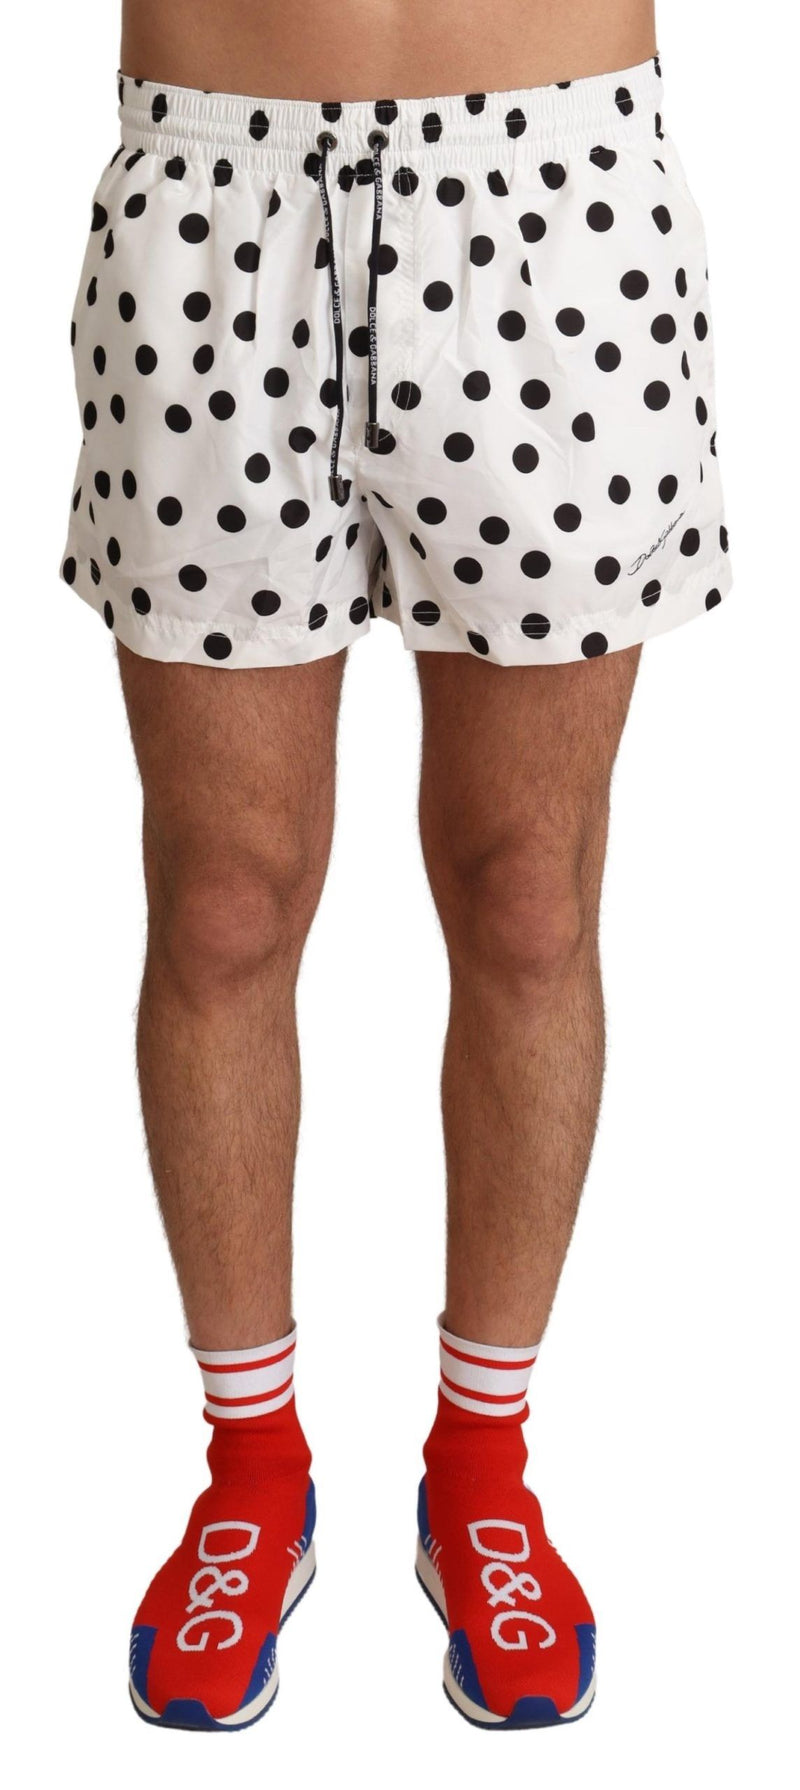 Dolce & Gabbana White Polka Dots Beachwear Shorts Men's Swimwear